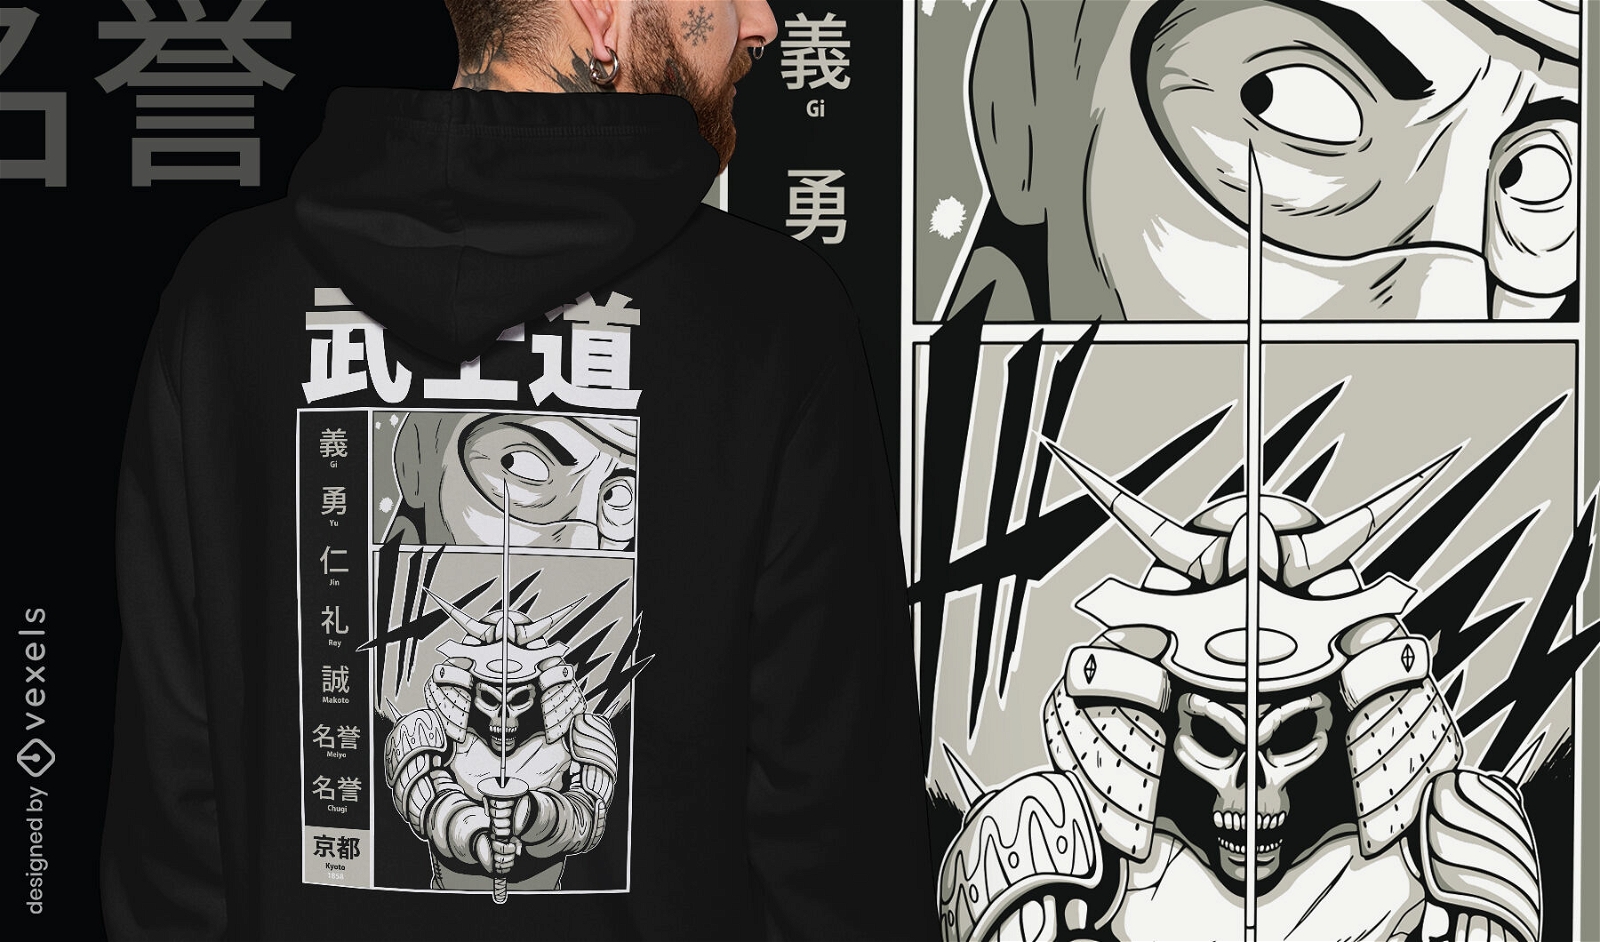 Samurai and man t-shirt design